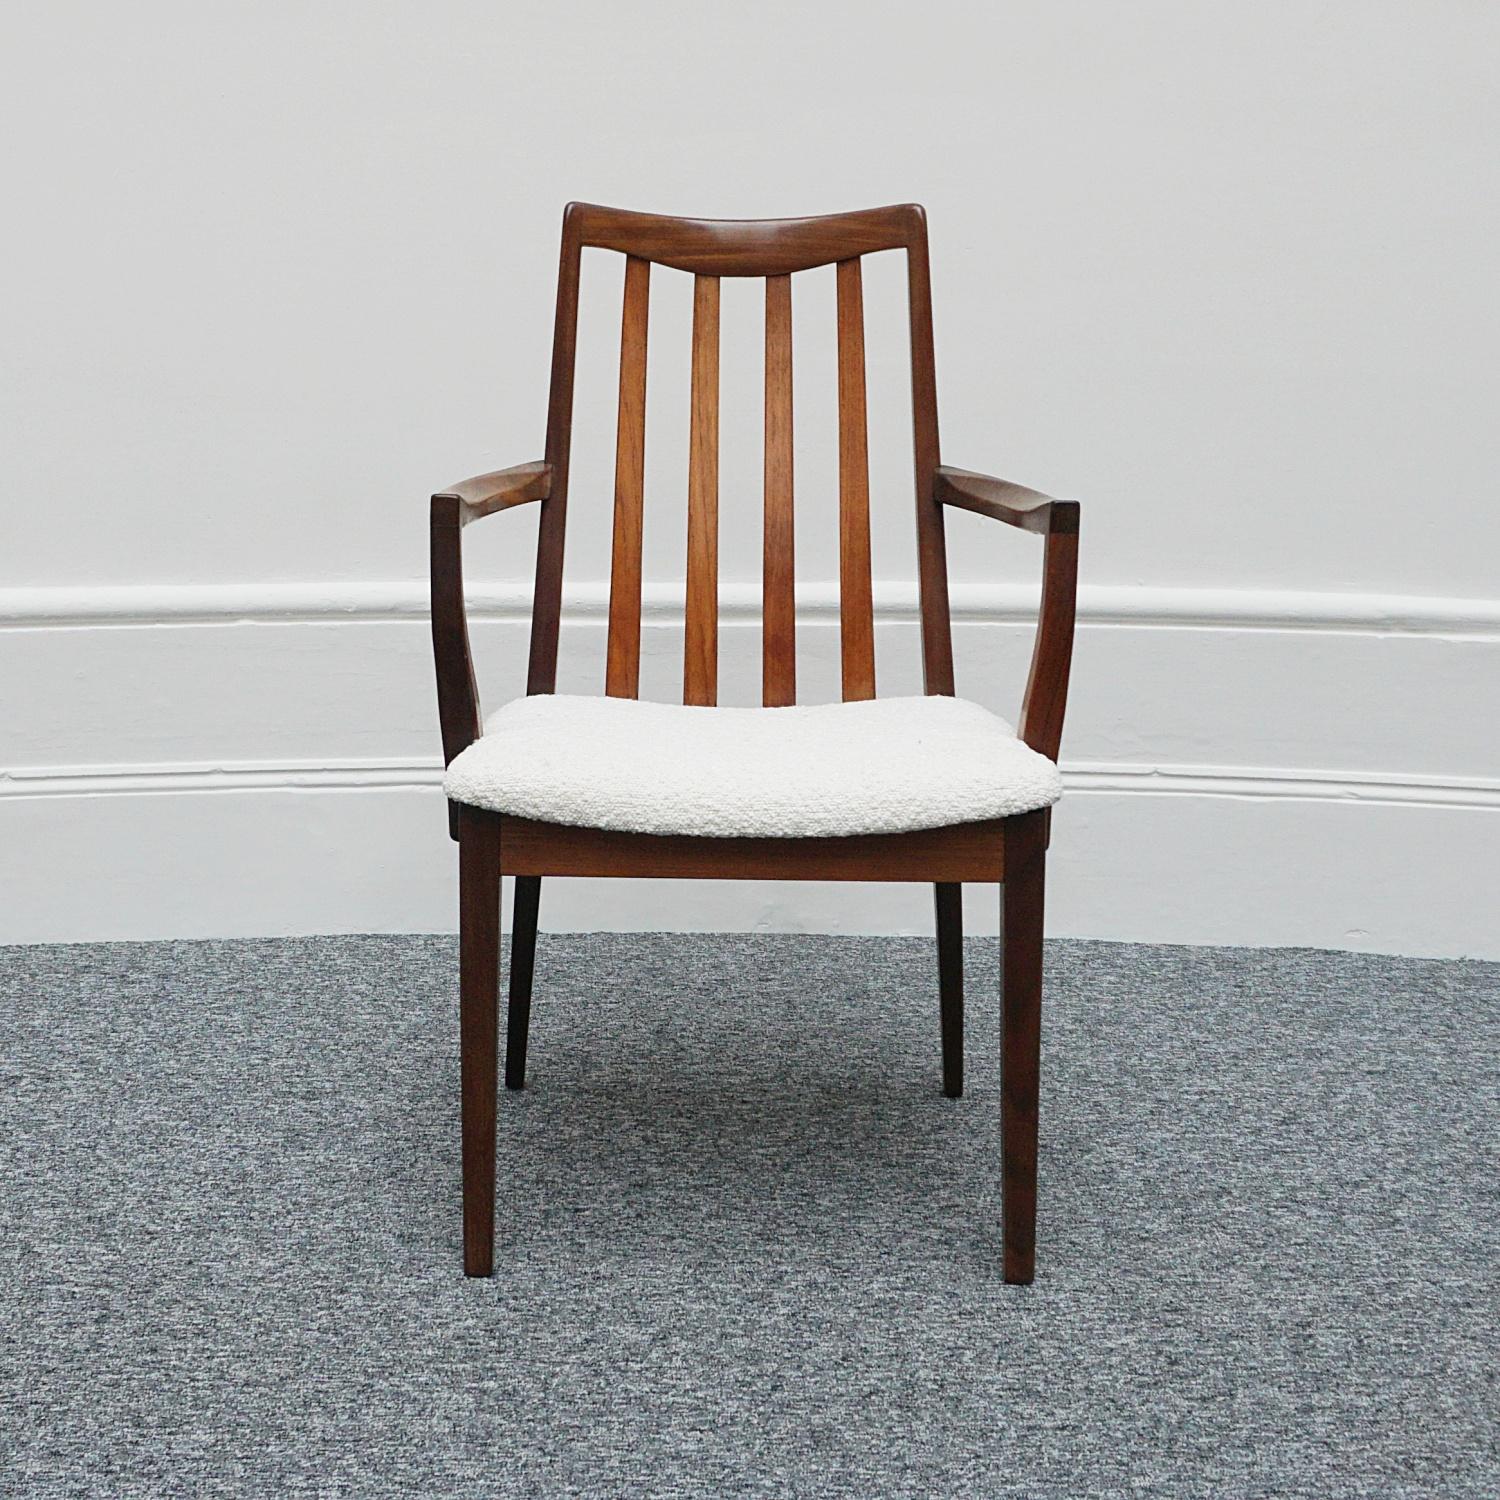 A mid-century desk chair. Rosewood, upholstered in white Bouclé. 

Dimensions: H 90cm W 57cm D 44cm Seat H 44cm W 49cm D 44cm Arm H 65cm 

Origin: Danish

Date: Circa 1960.